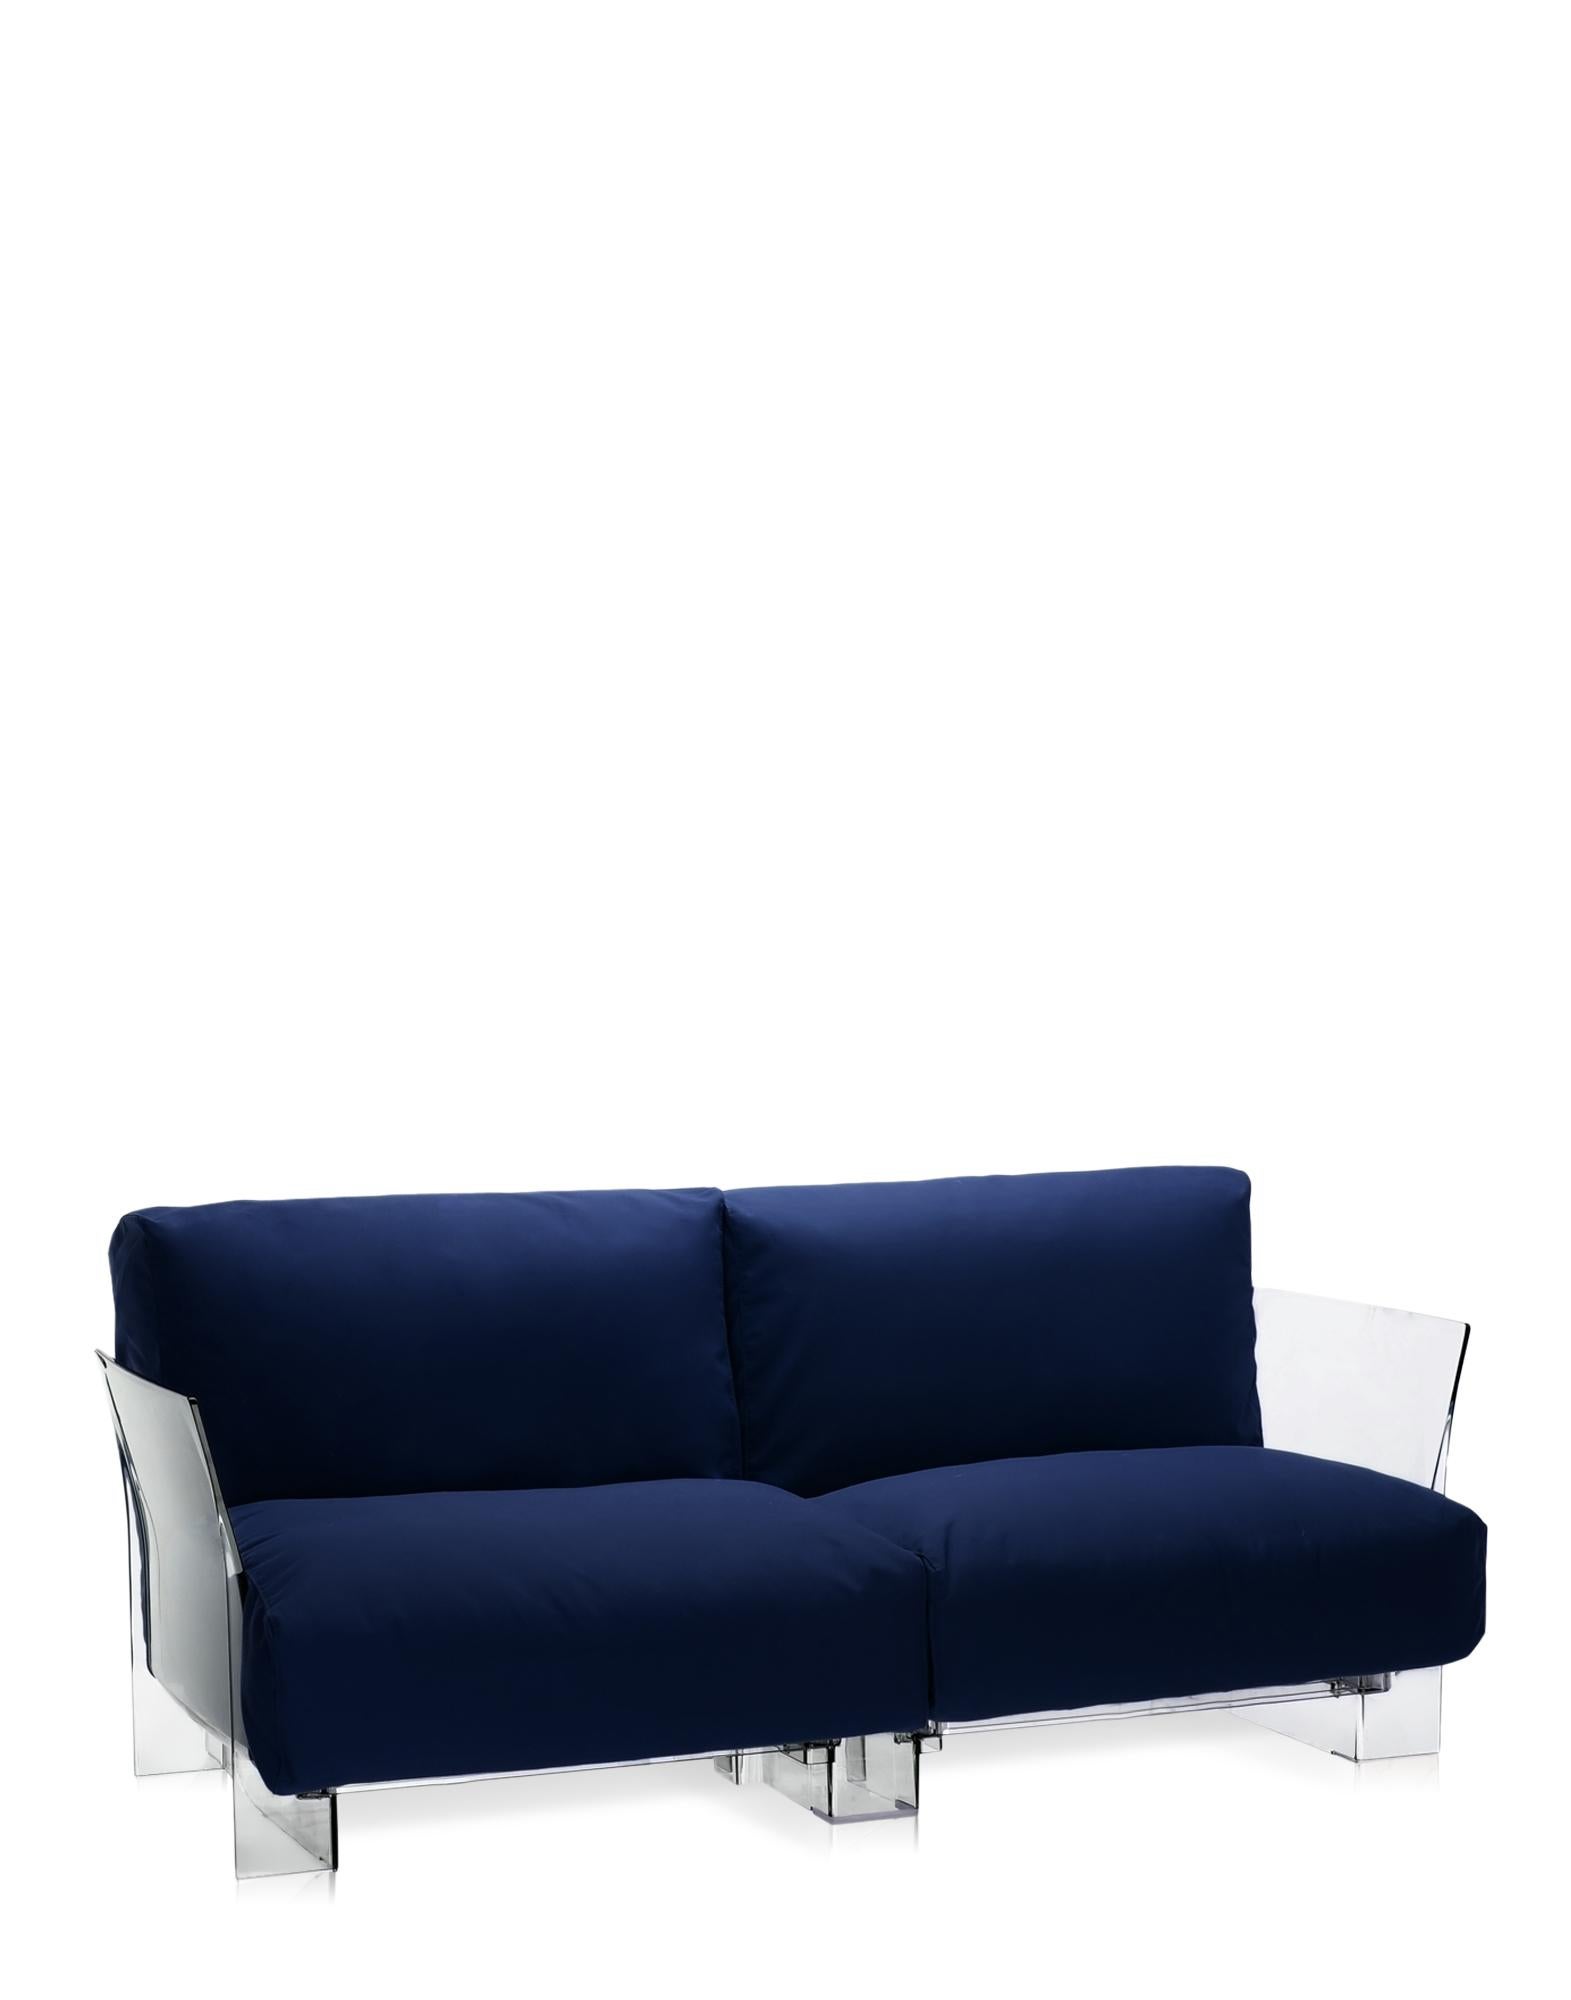 Pop outdoor est le canapé modulaire aux profils évanescents caractérisé par de grands coussins d'assise et de dossier qui le rendent doux et confortable, réalisé avec des tissus conçus spécifiquement pour l'extérieur. 
La collection Pop est